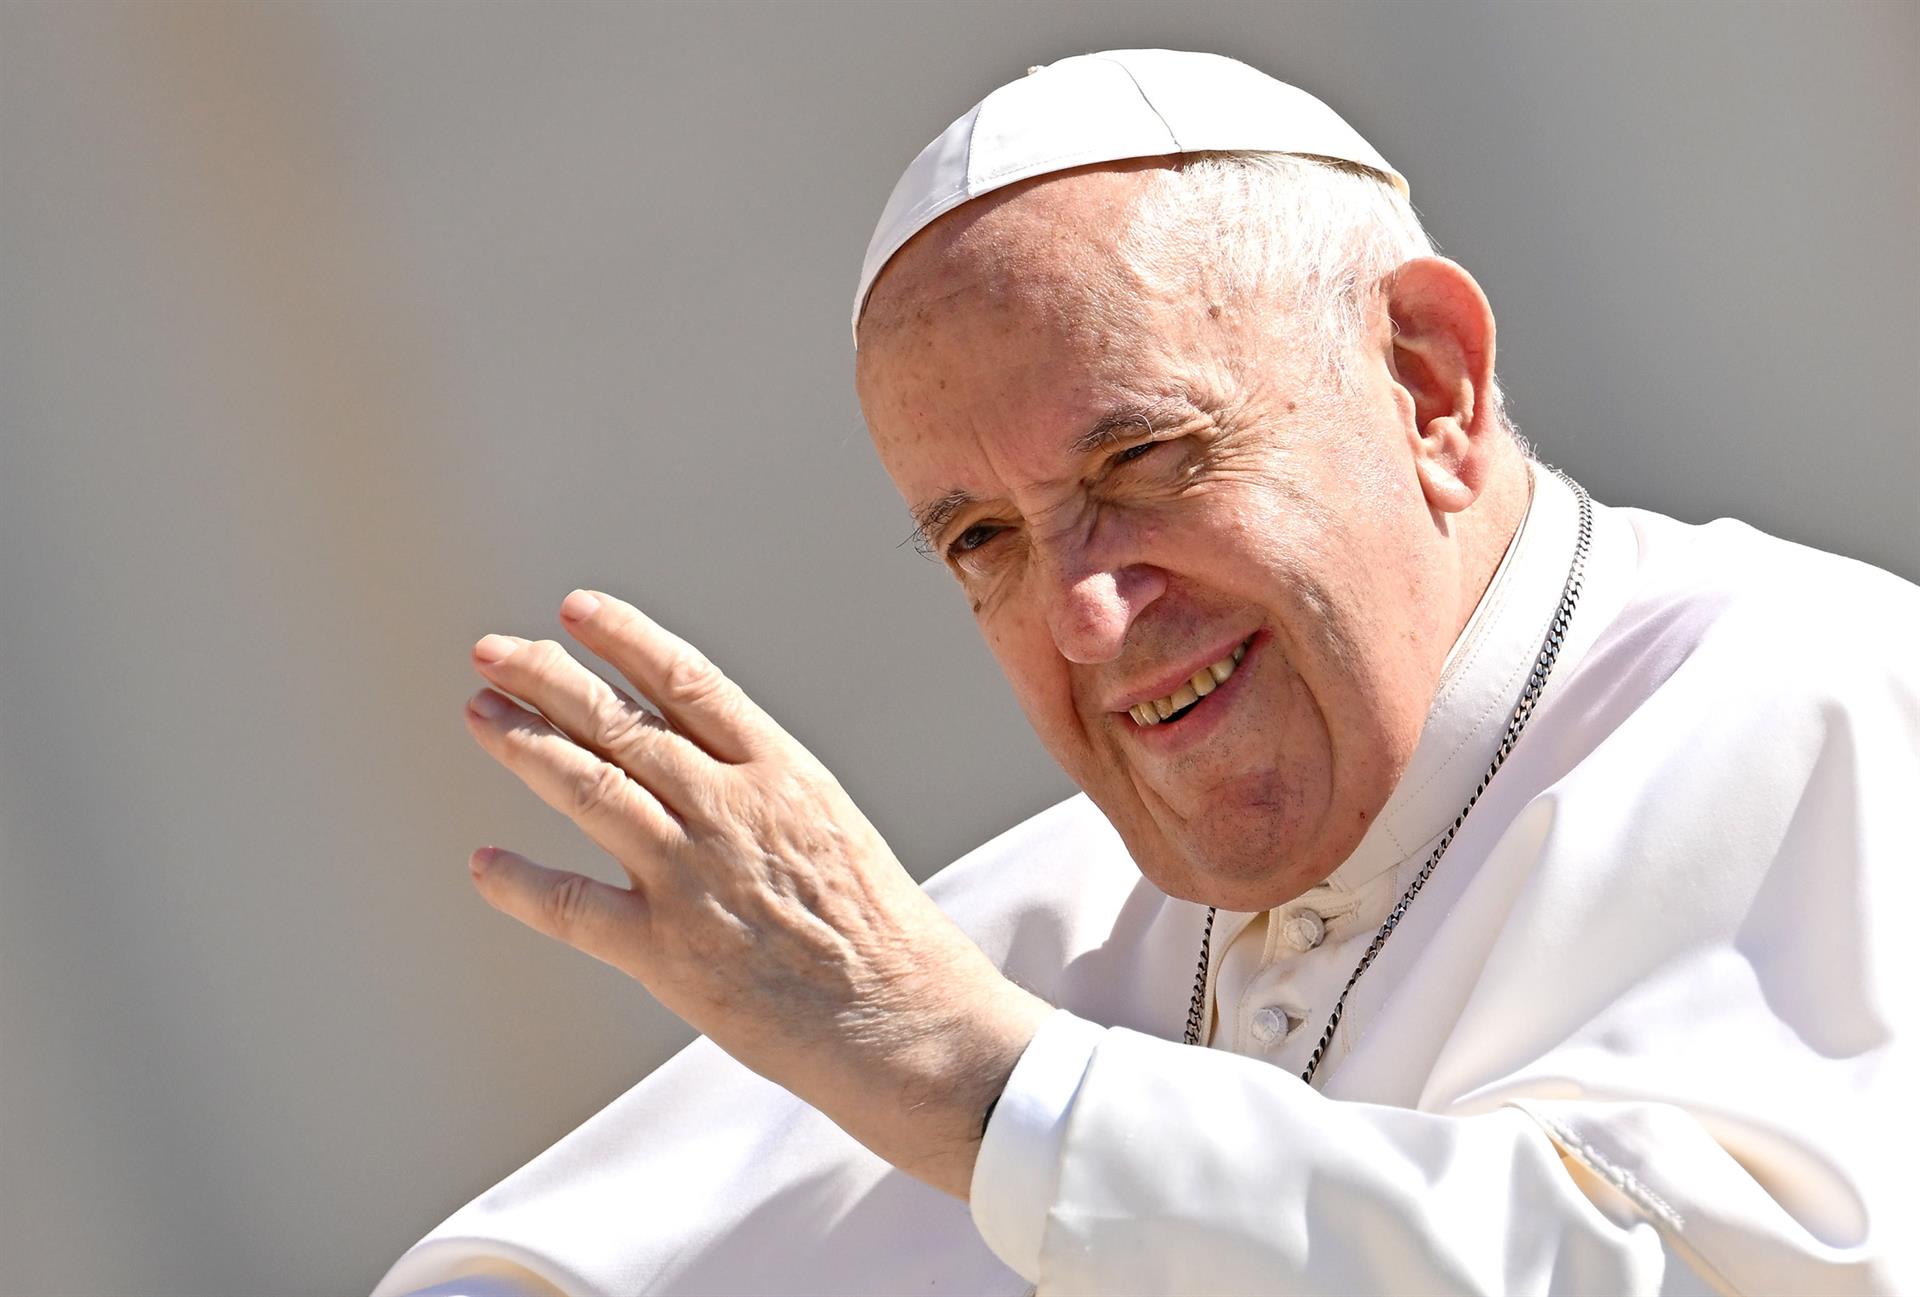 El papa Francisco dice que en la iglesia “hay lugar para todos” pese a “resistencias”